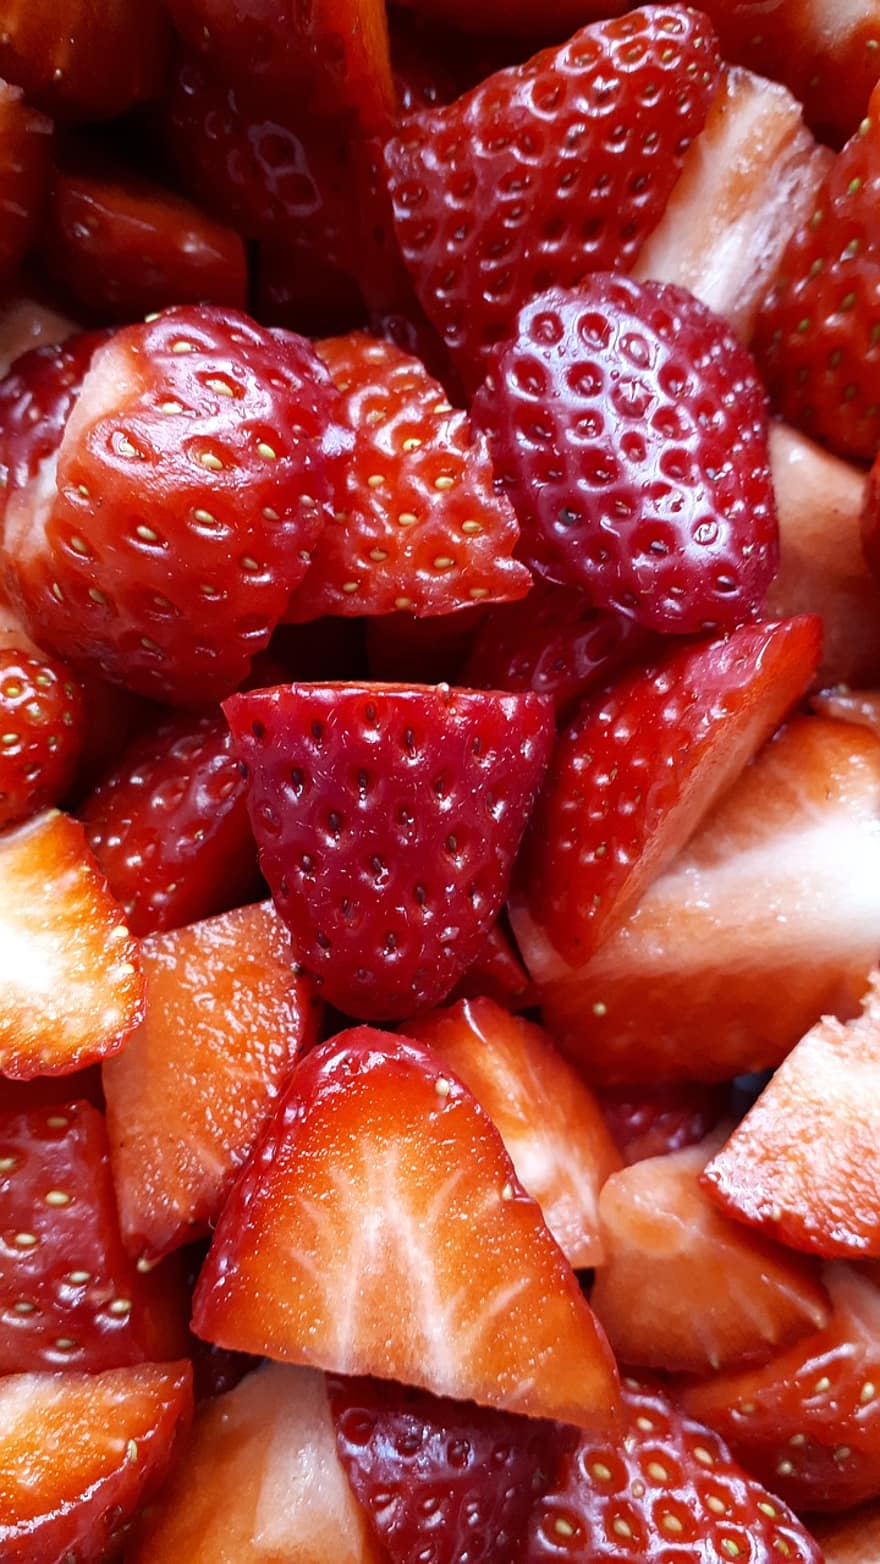 fruct, căpșună, organic, boabă, dulce, gustare, vitamină, nutrienți, prospeţime, a închide, alimente